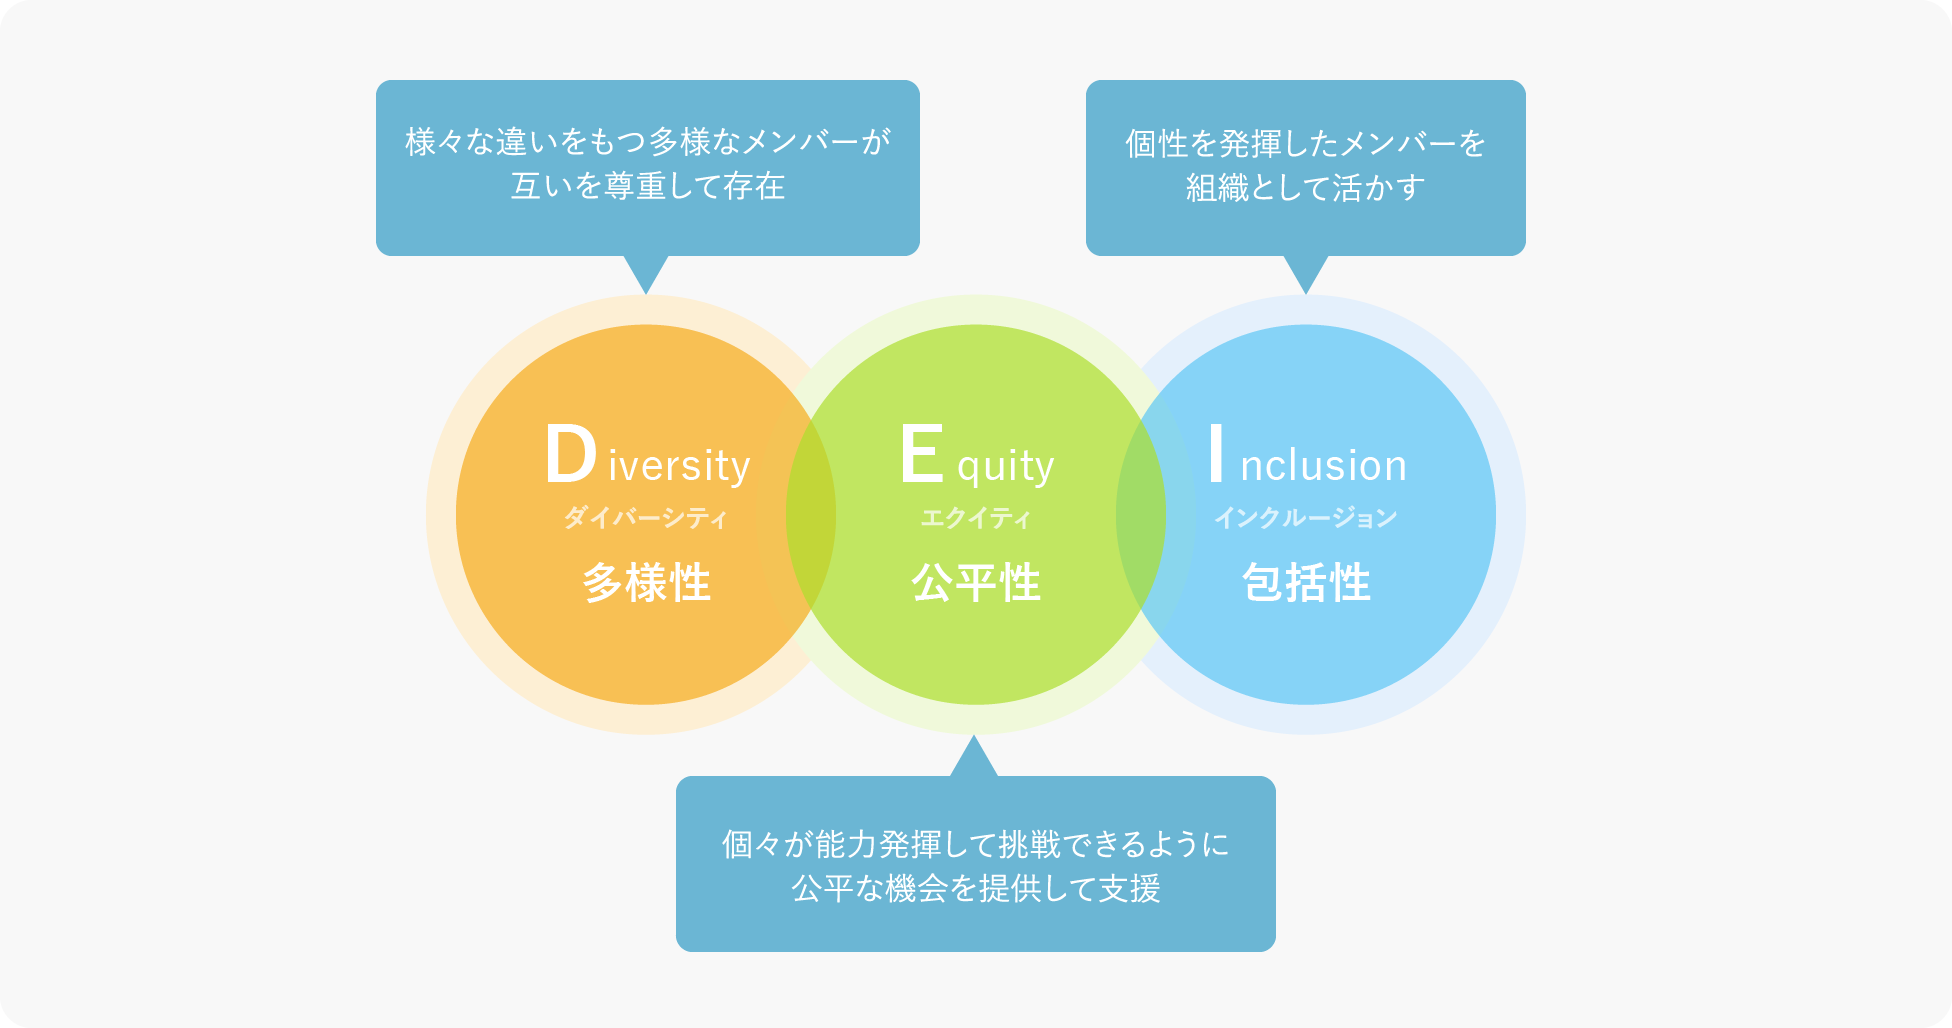 Diversity 様々な違いをもつ多様なメンバーが互いを尊重して存在、Equity 個々が能力発揮して挑戦できるように公平な機会を提供して支援、Inclusion 個性を発揮したメンバーを組織として活かす